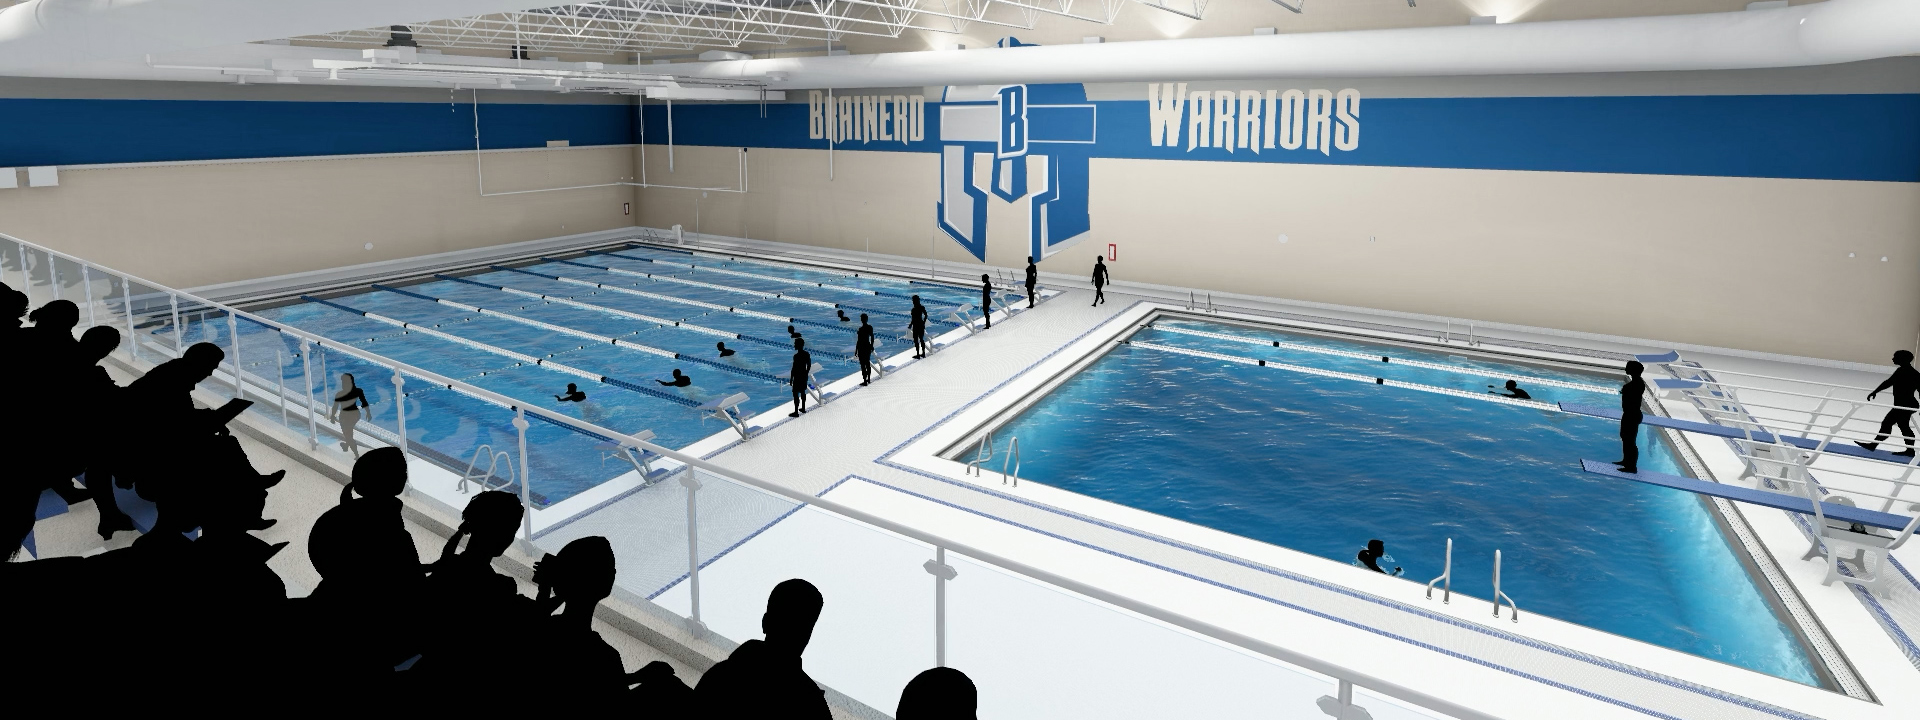 VIDEO Brainerd High School’s Pool Project Underway — Activities